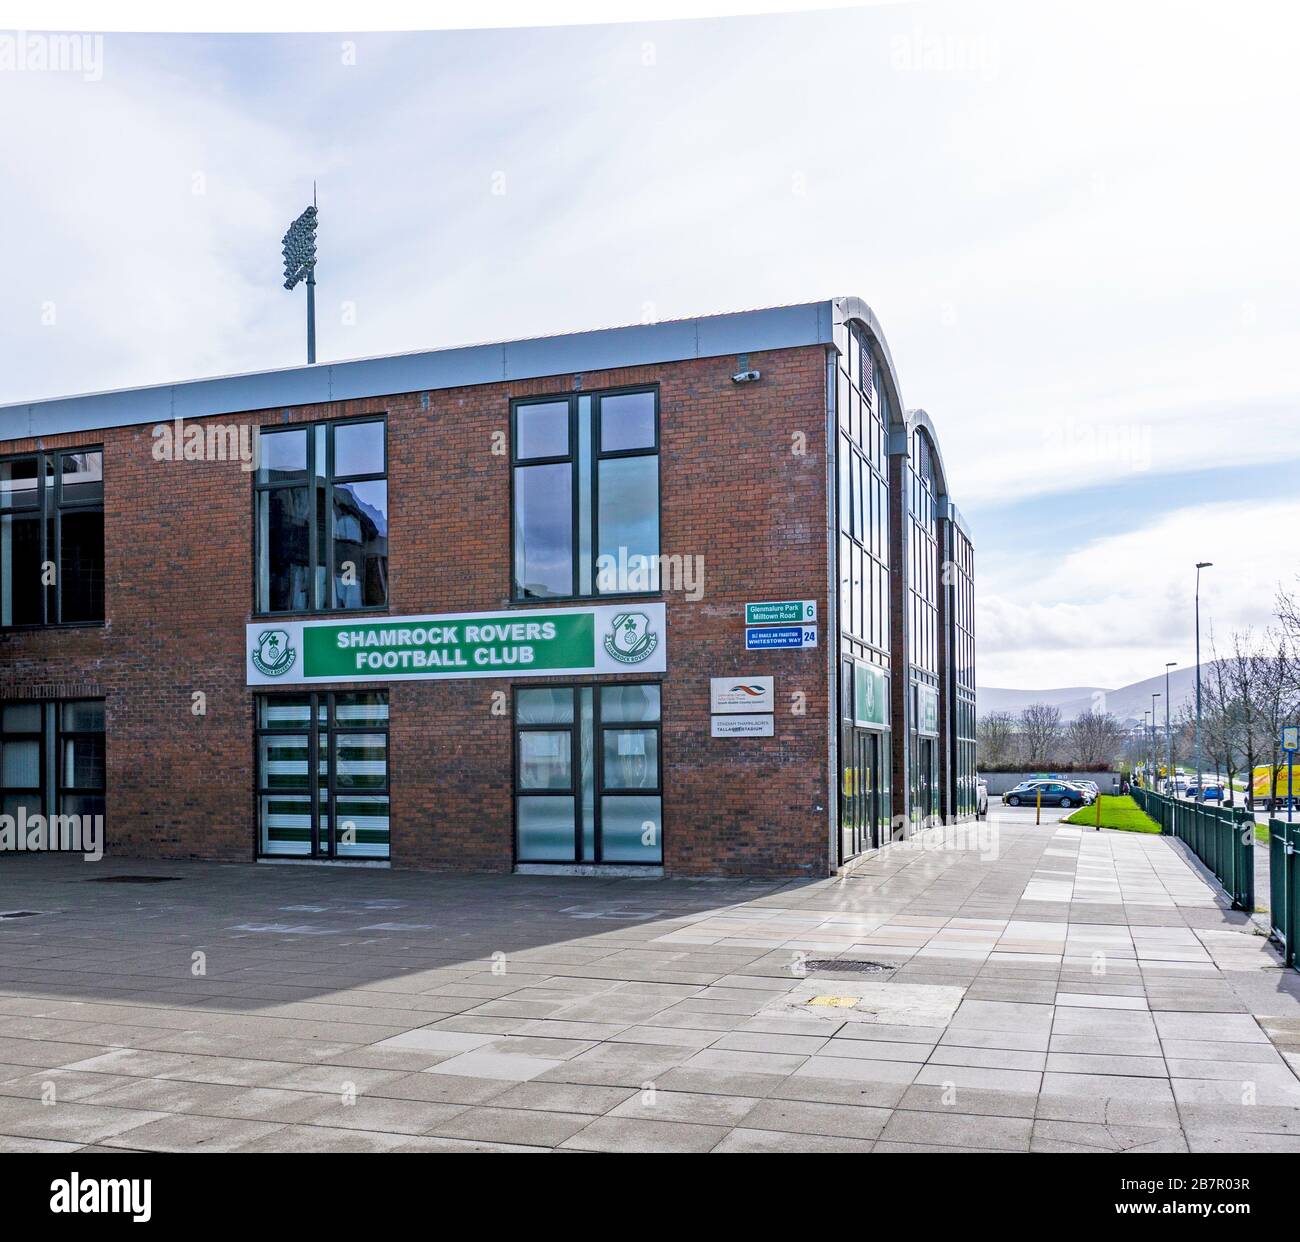 Der Shamrock Rovers Mega-Shop. Dublin, Irland. Die Fußballmannschaft Shamrock Rovers ist Mitglied der League of Ireland Premier Division. Stockfoto